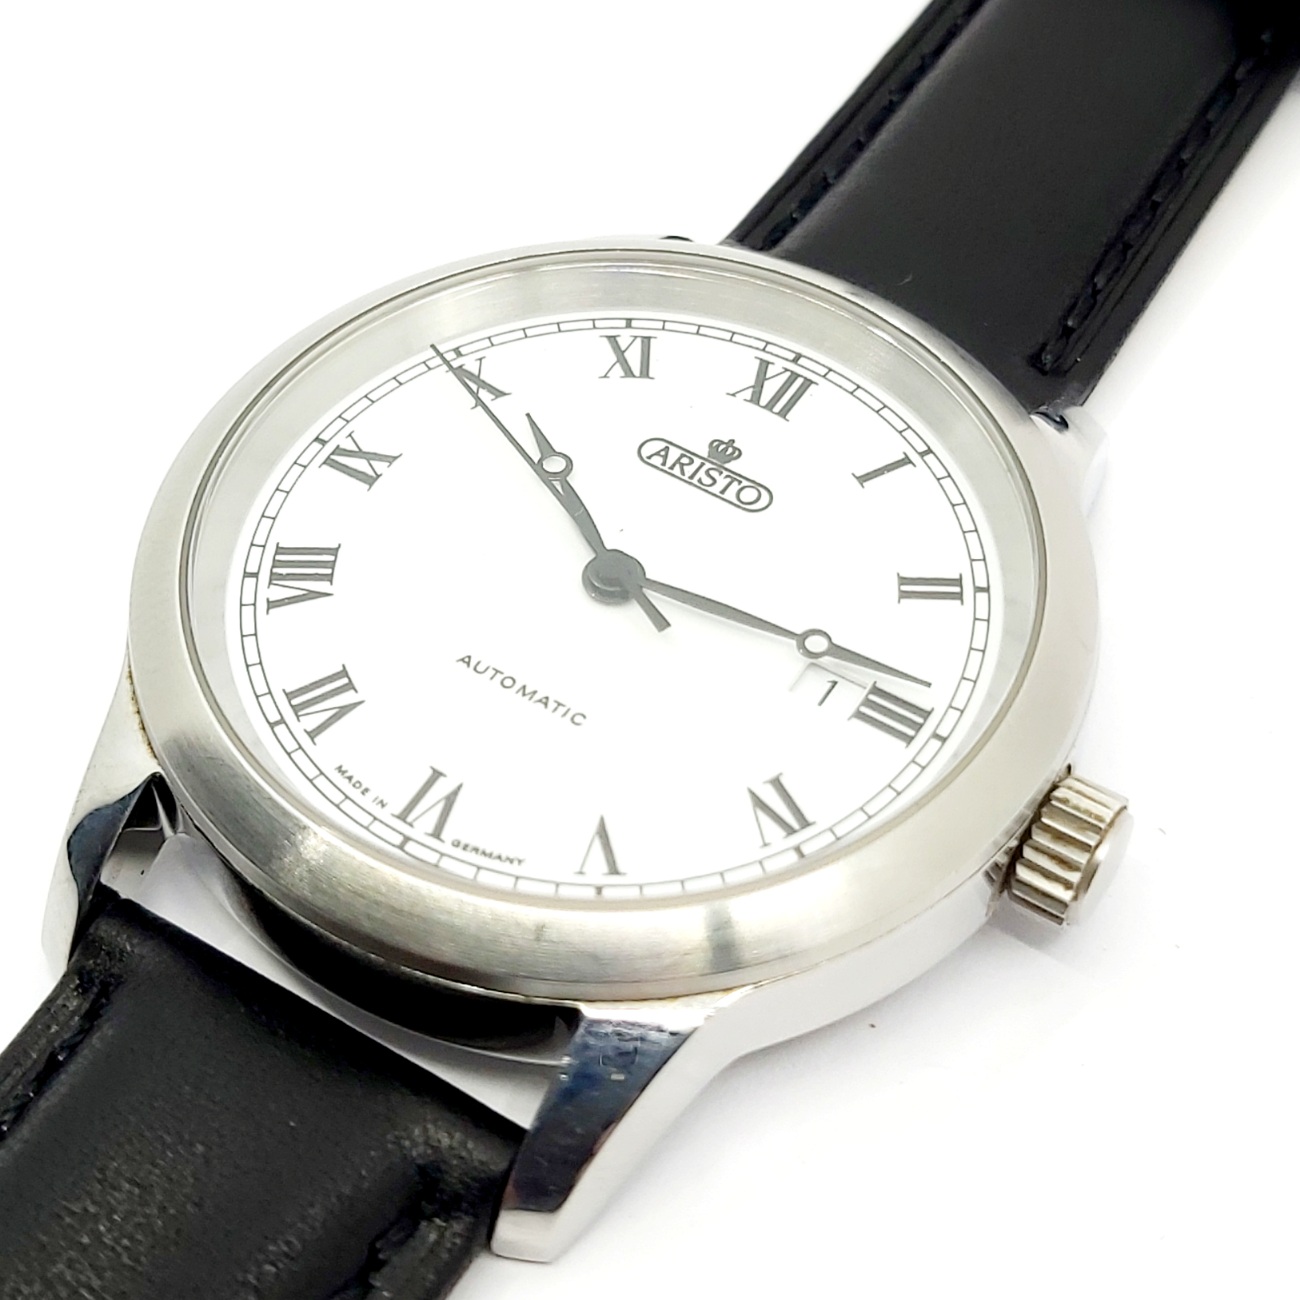 1 Armbanduhr Aristo, Automatic, Edelstahl, Lederband